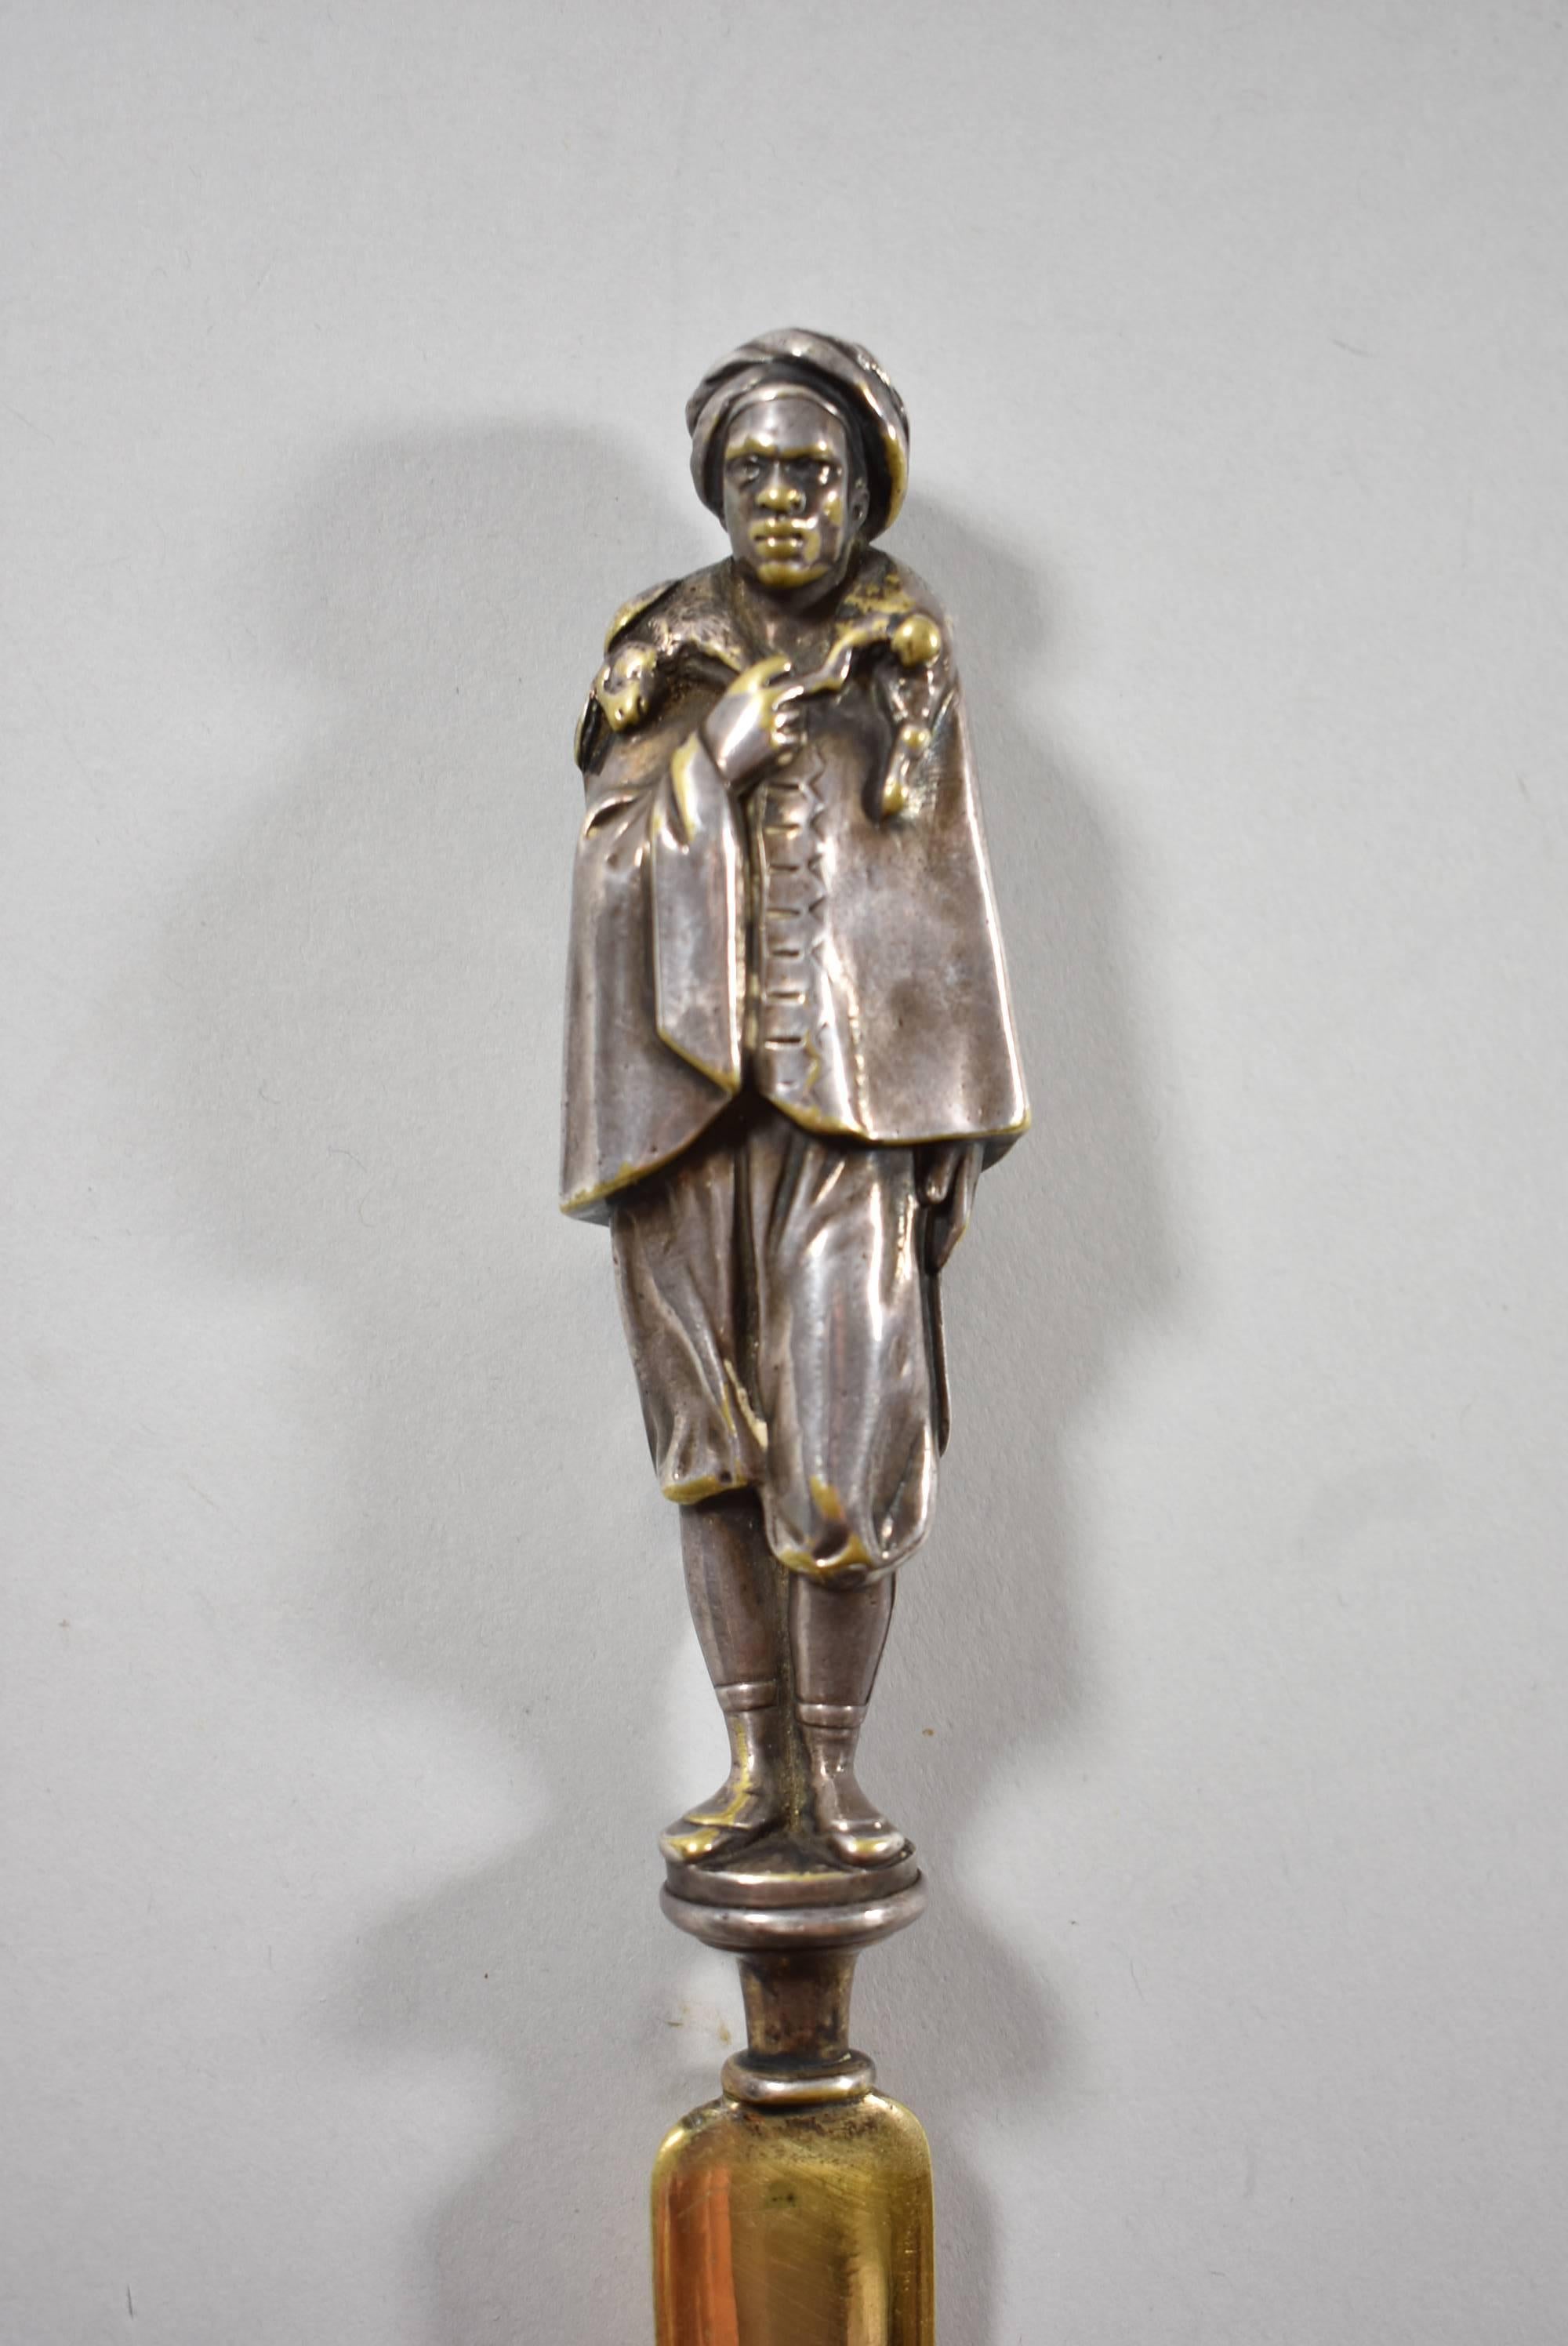 Un ancien tourne-page figuratif en bronze. Il représente un chasseur arabe avec un lapin. La figure est en bronze avec un placage en argent. Très beau détail. Excellent état. Dimensions : 1.5